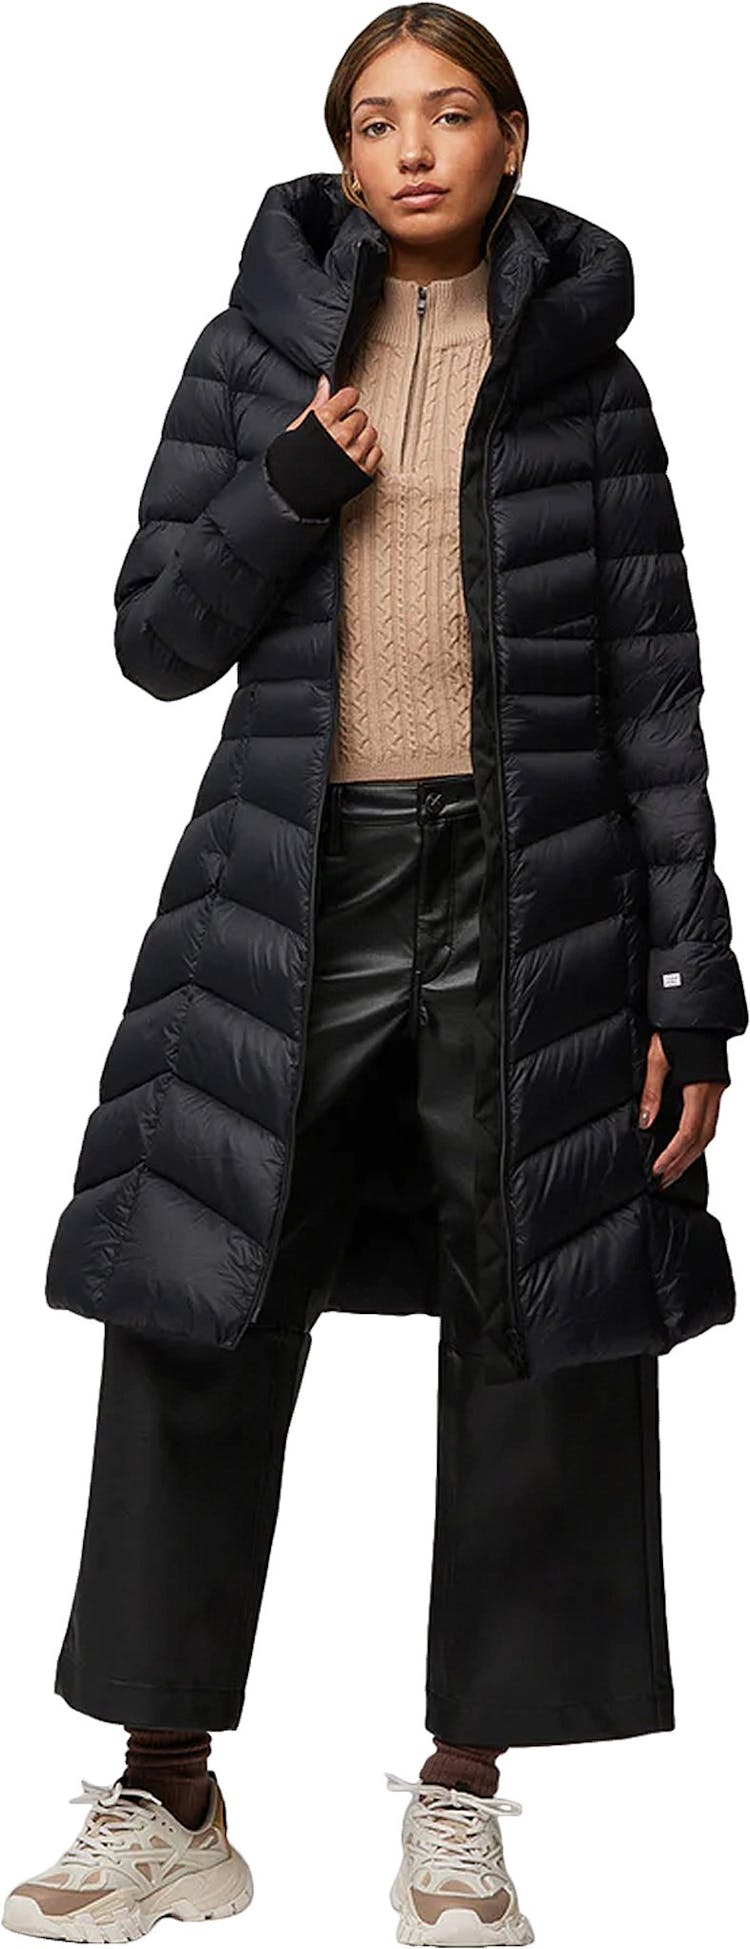 Numéro de l'image de la galerie de produits 2 pour le produit Manteau ajusté et évasé en duvet léger durable avec capuchon Lita-TD - Femme